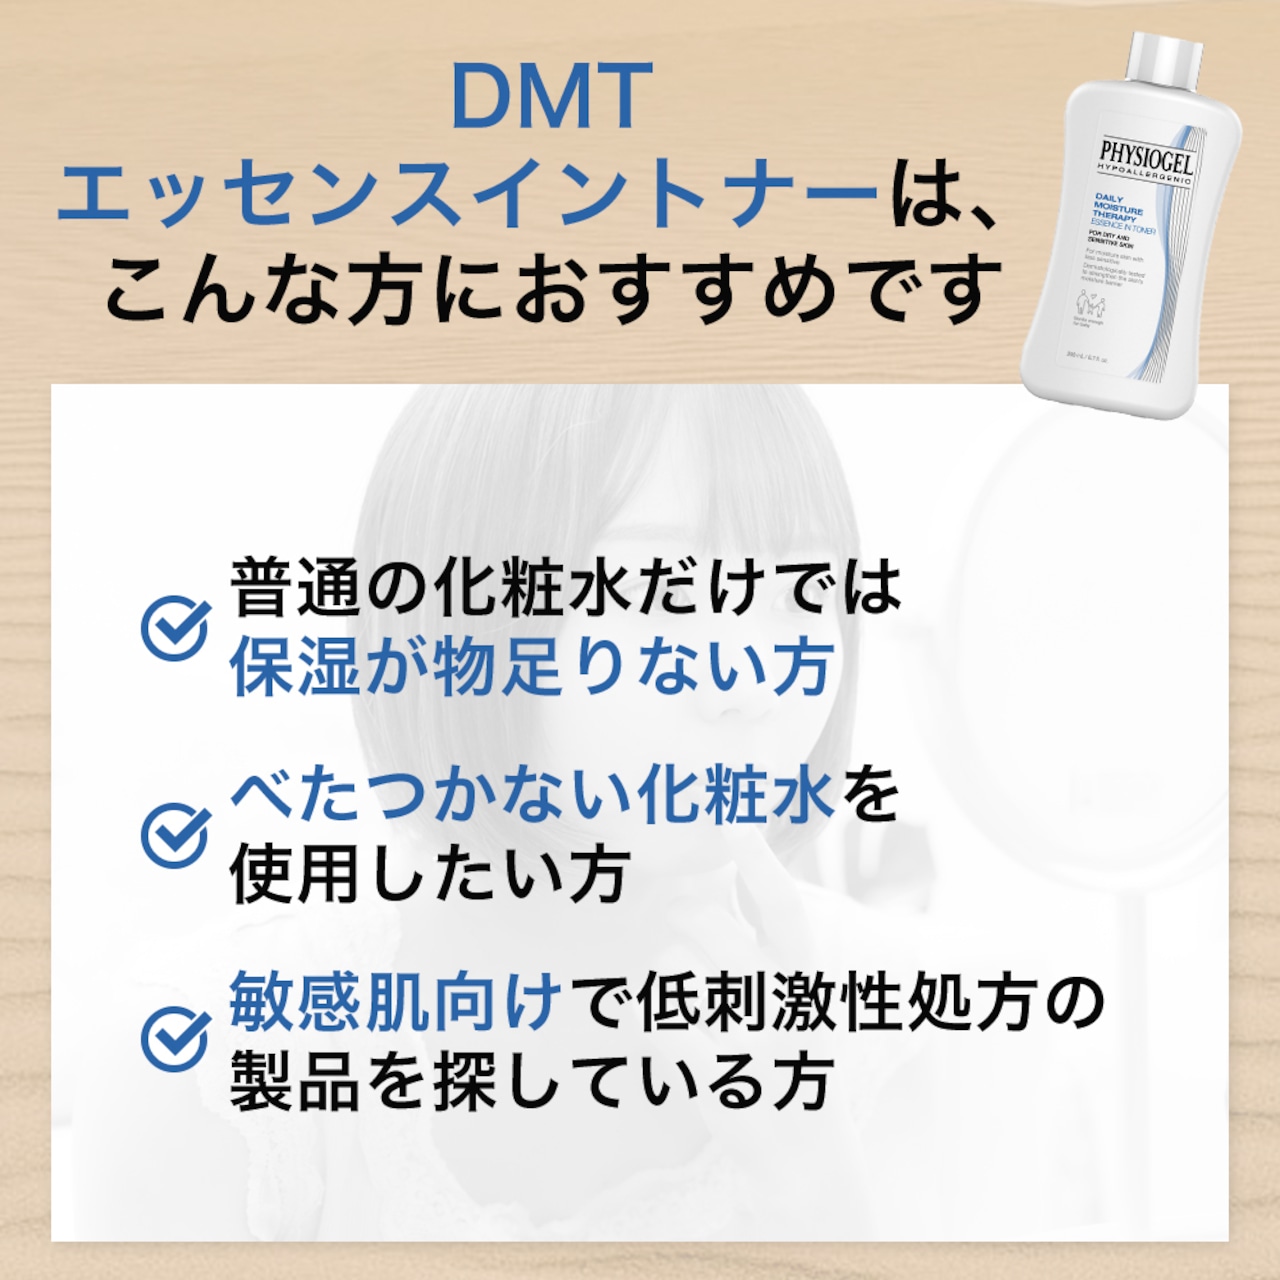 DMT エッセンスイントナー 200mL（580円分サンプル付き）